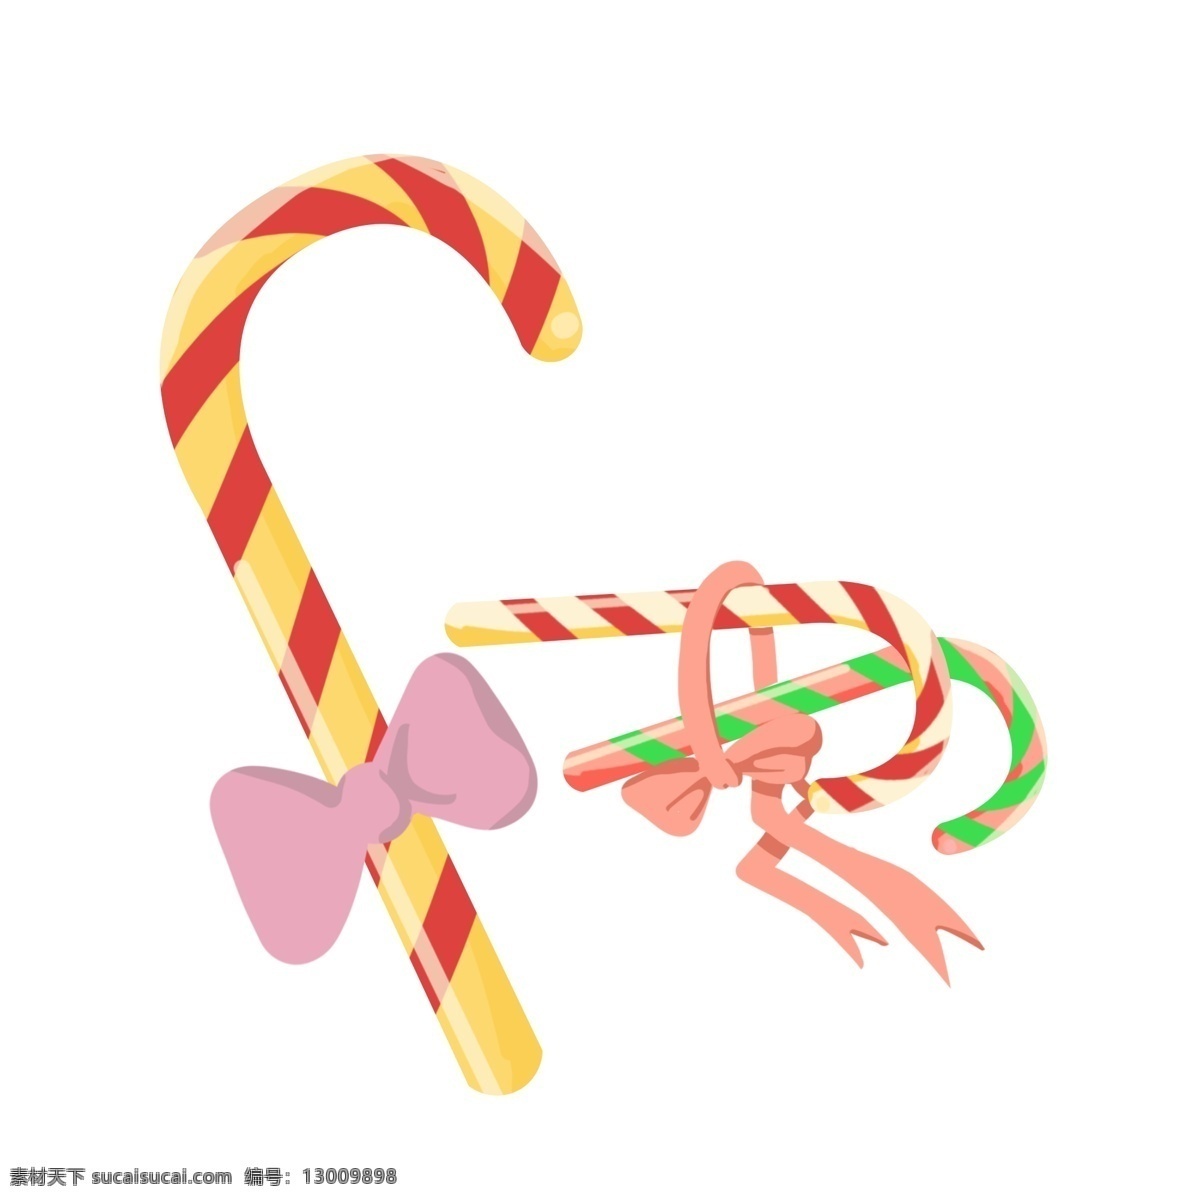 蝴蝶结 拐杖 糖果 插画 拐杖糖果 节日糖果 粉色 装饰 多个糖果 卡通童趣糖果 绿色红色糖果 黄色红色糖果